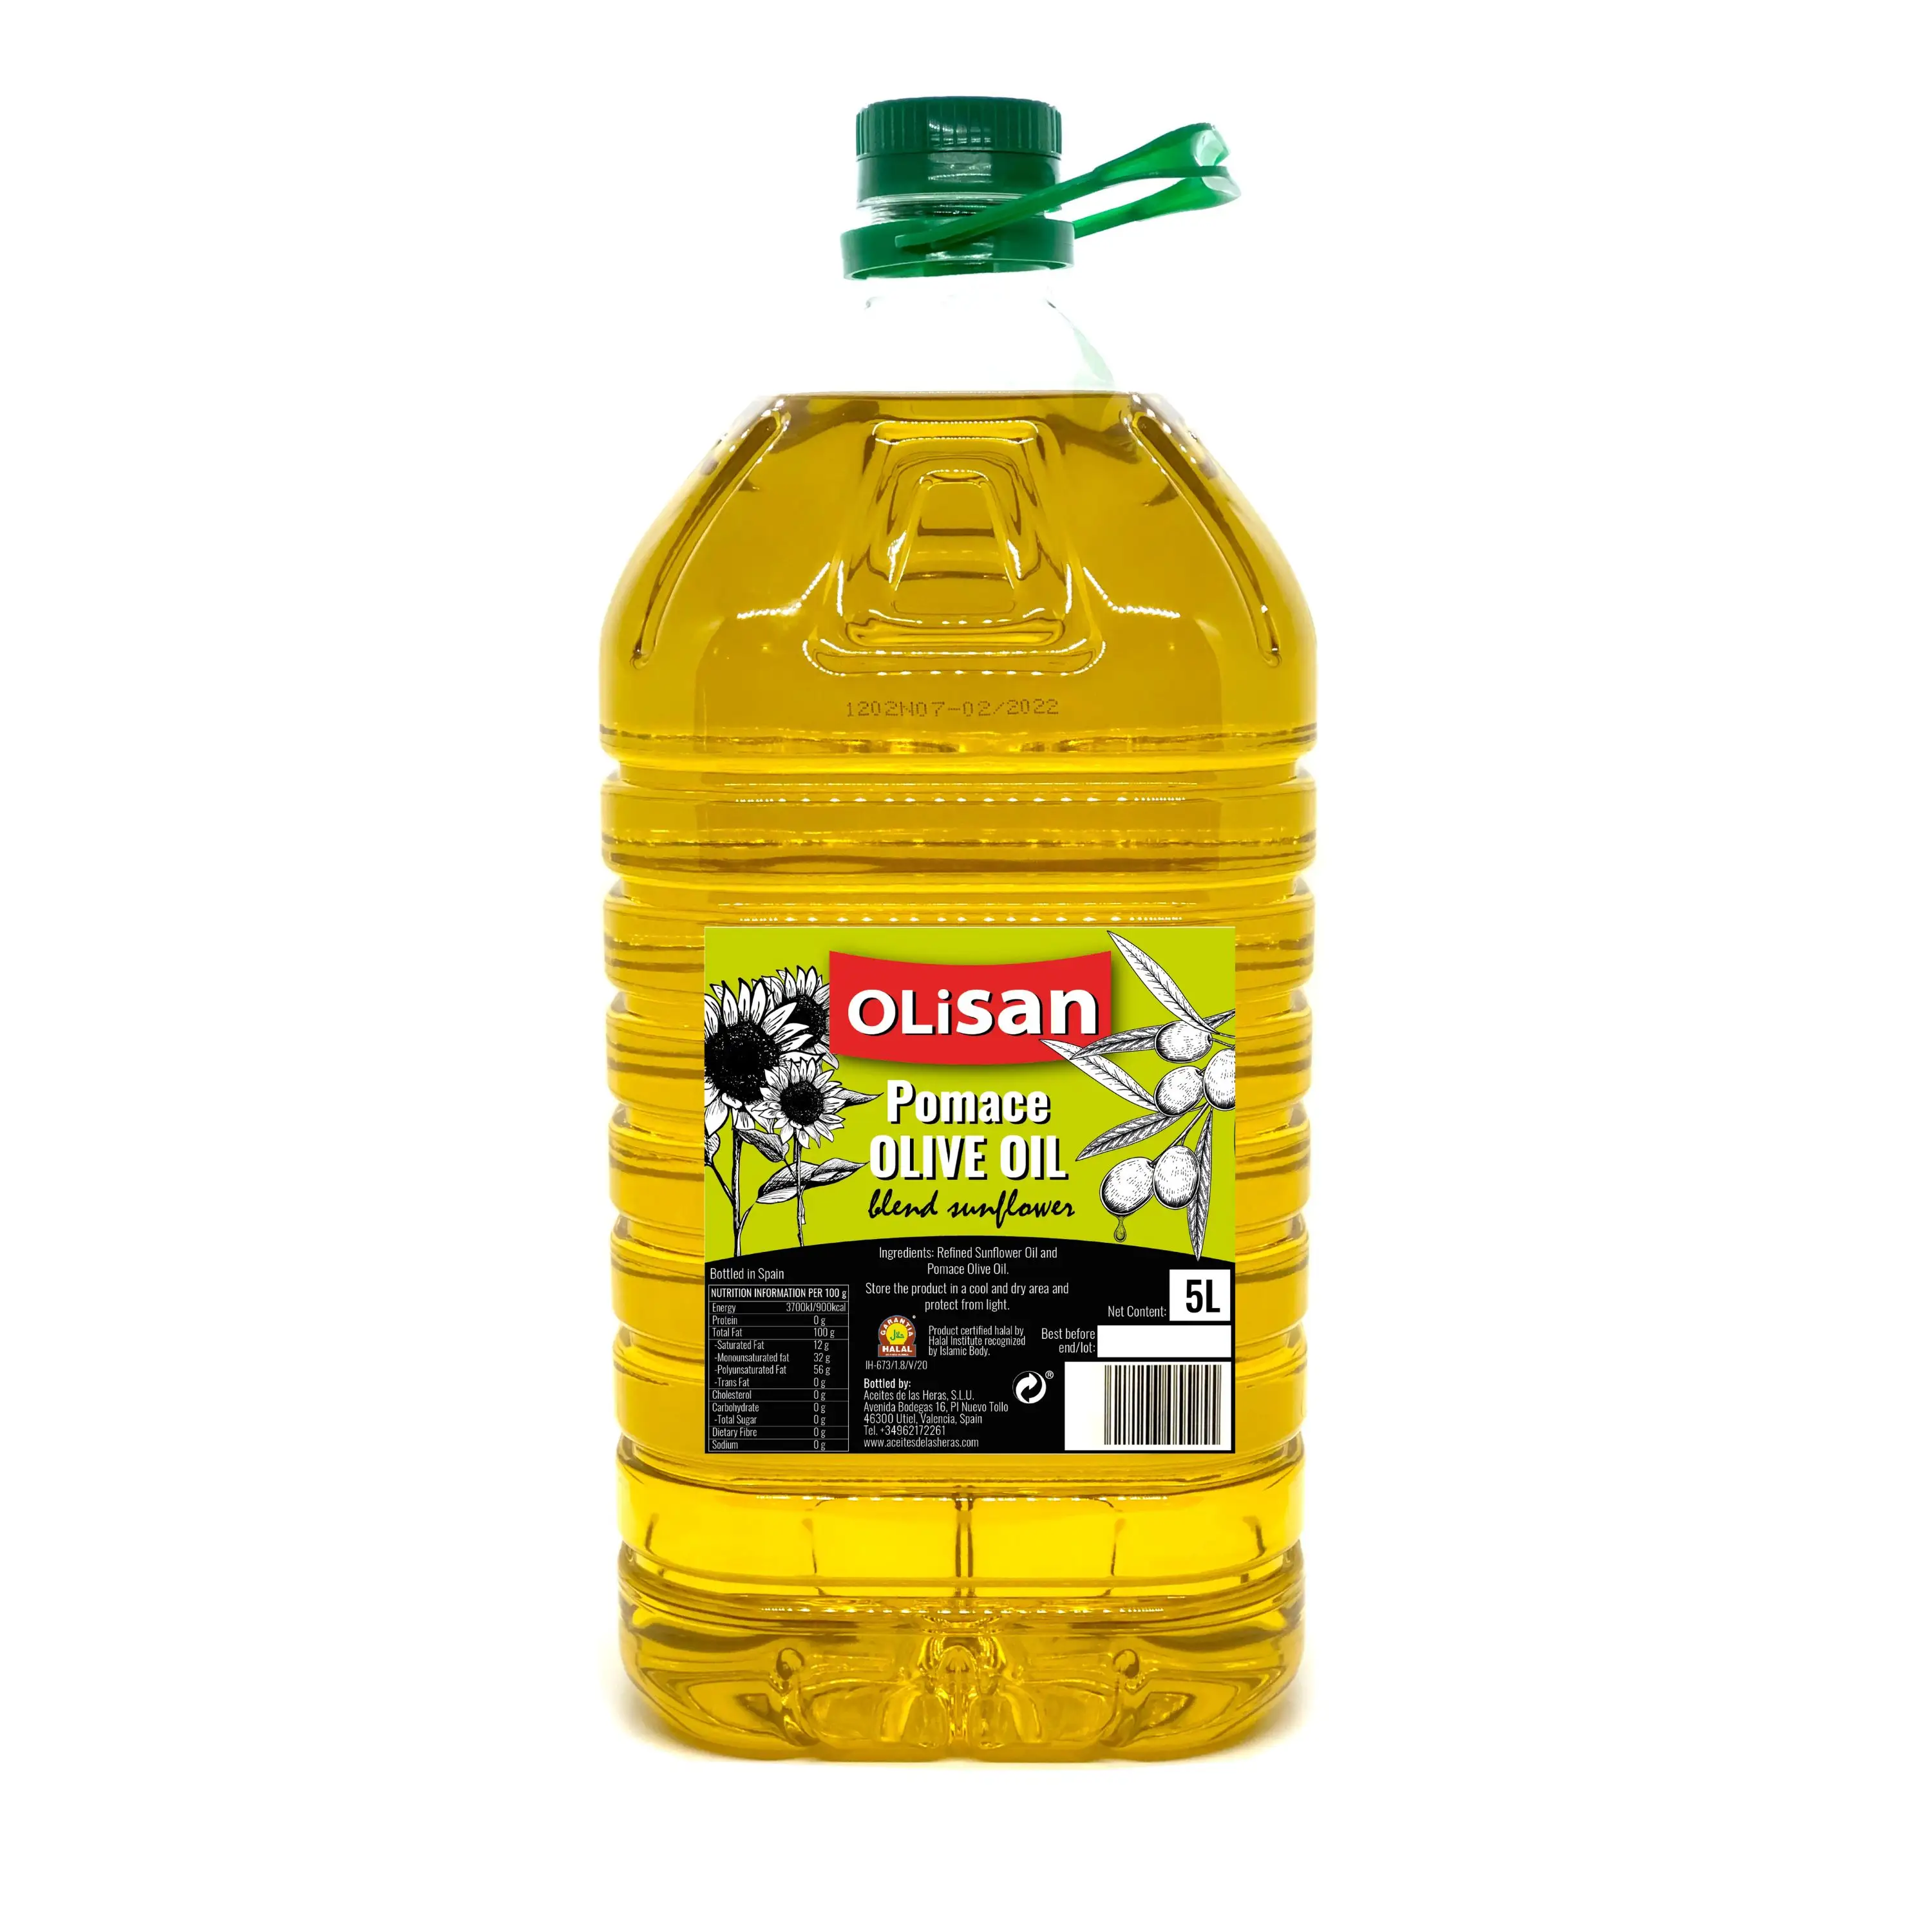 Sansa miscela di olio d'oliva con olio di girasole bottiglia in PET da 5 litri per vendita al dettaglio, horeca e olio da cucina all'ingrosso